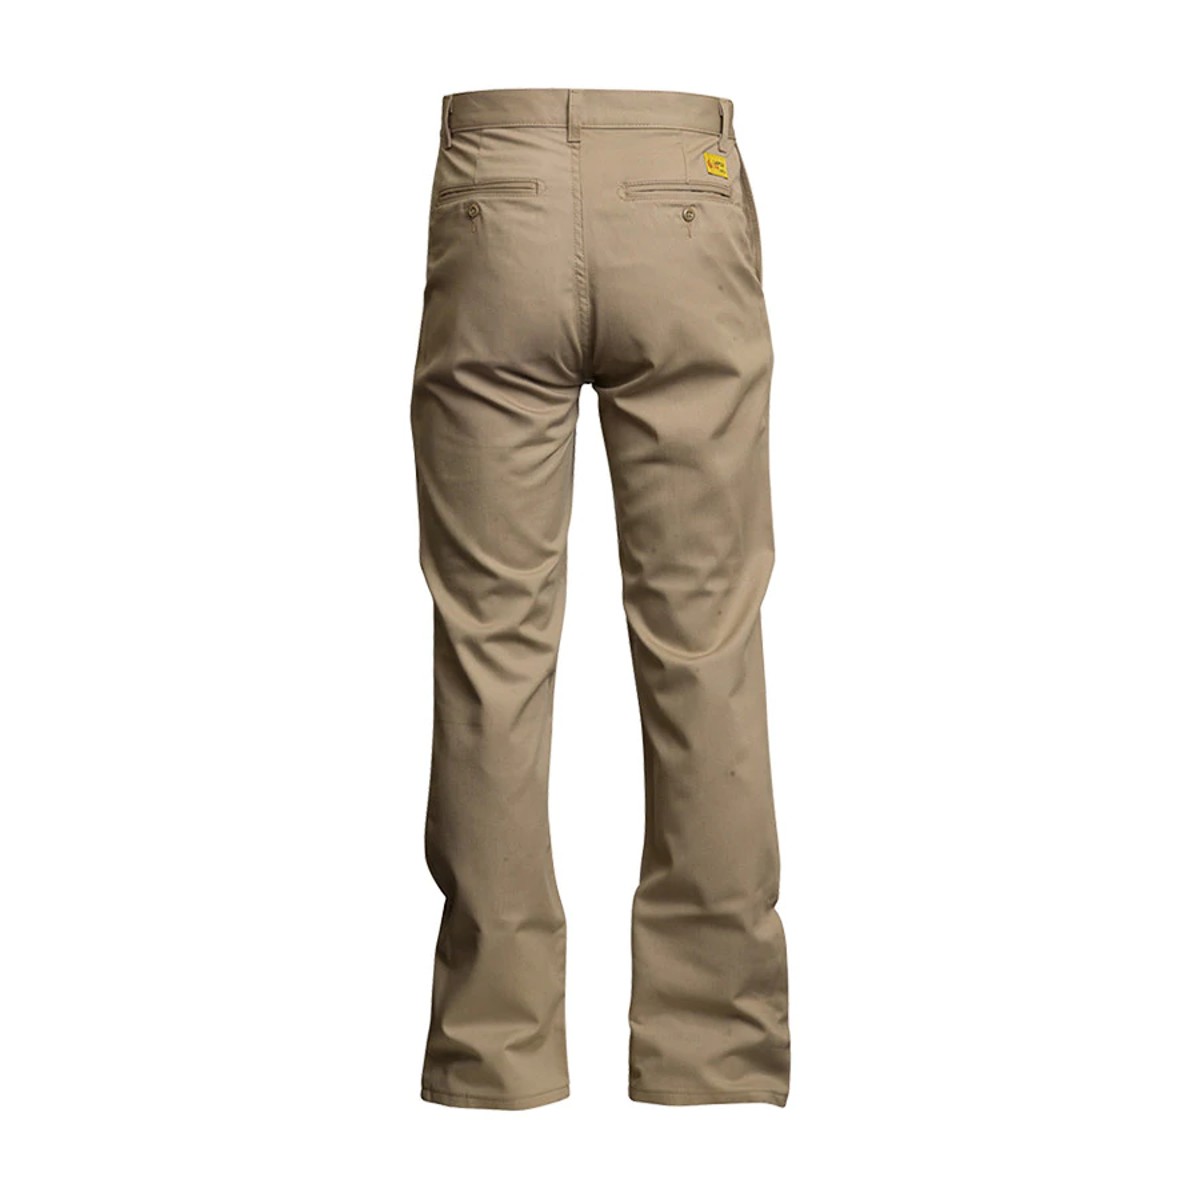 LAPCO FR Uniform Pants in Westex UltraSoft in Khaki